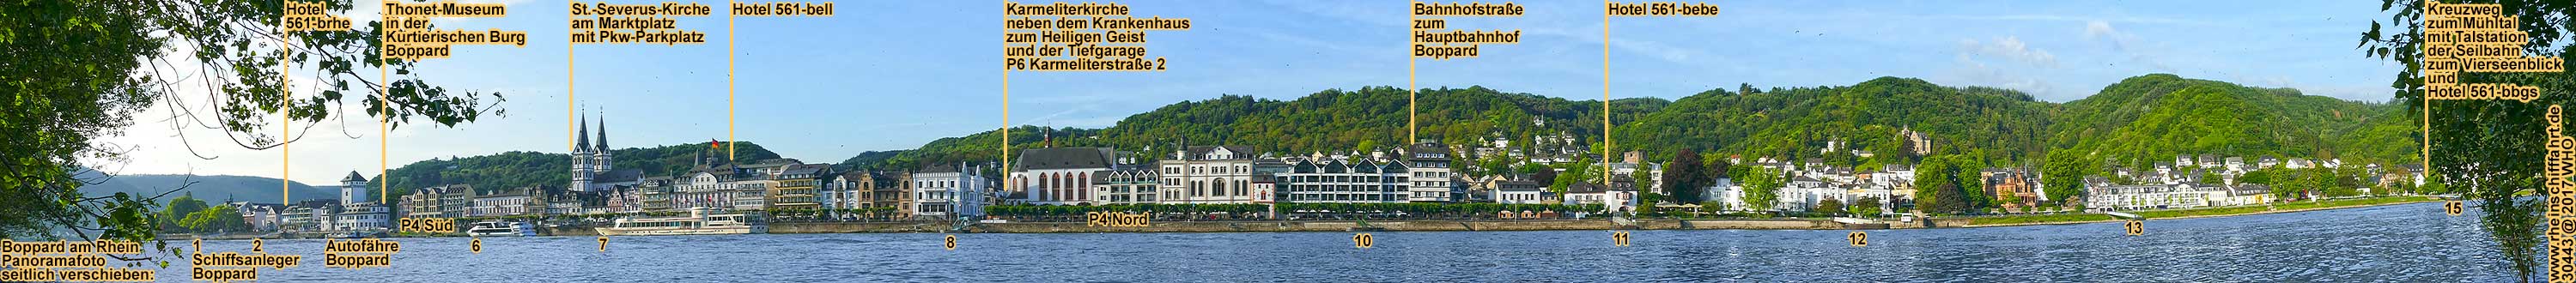 Boppard am Rhein. Panoramafoto mit Schiffsanlegern.